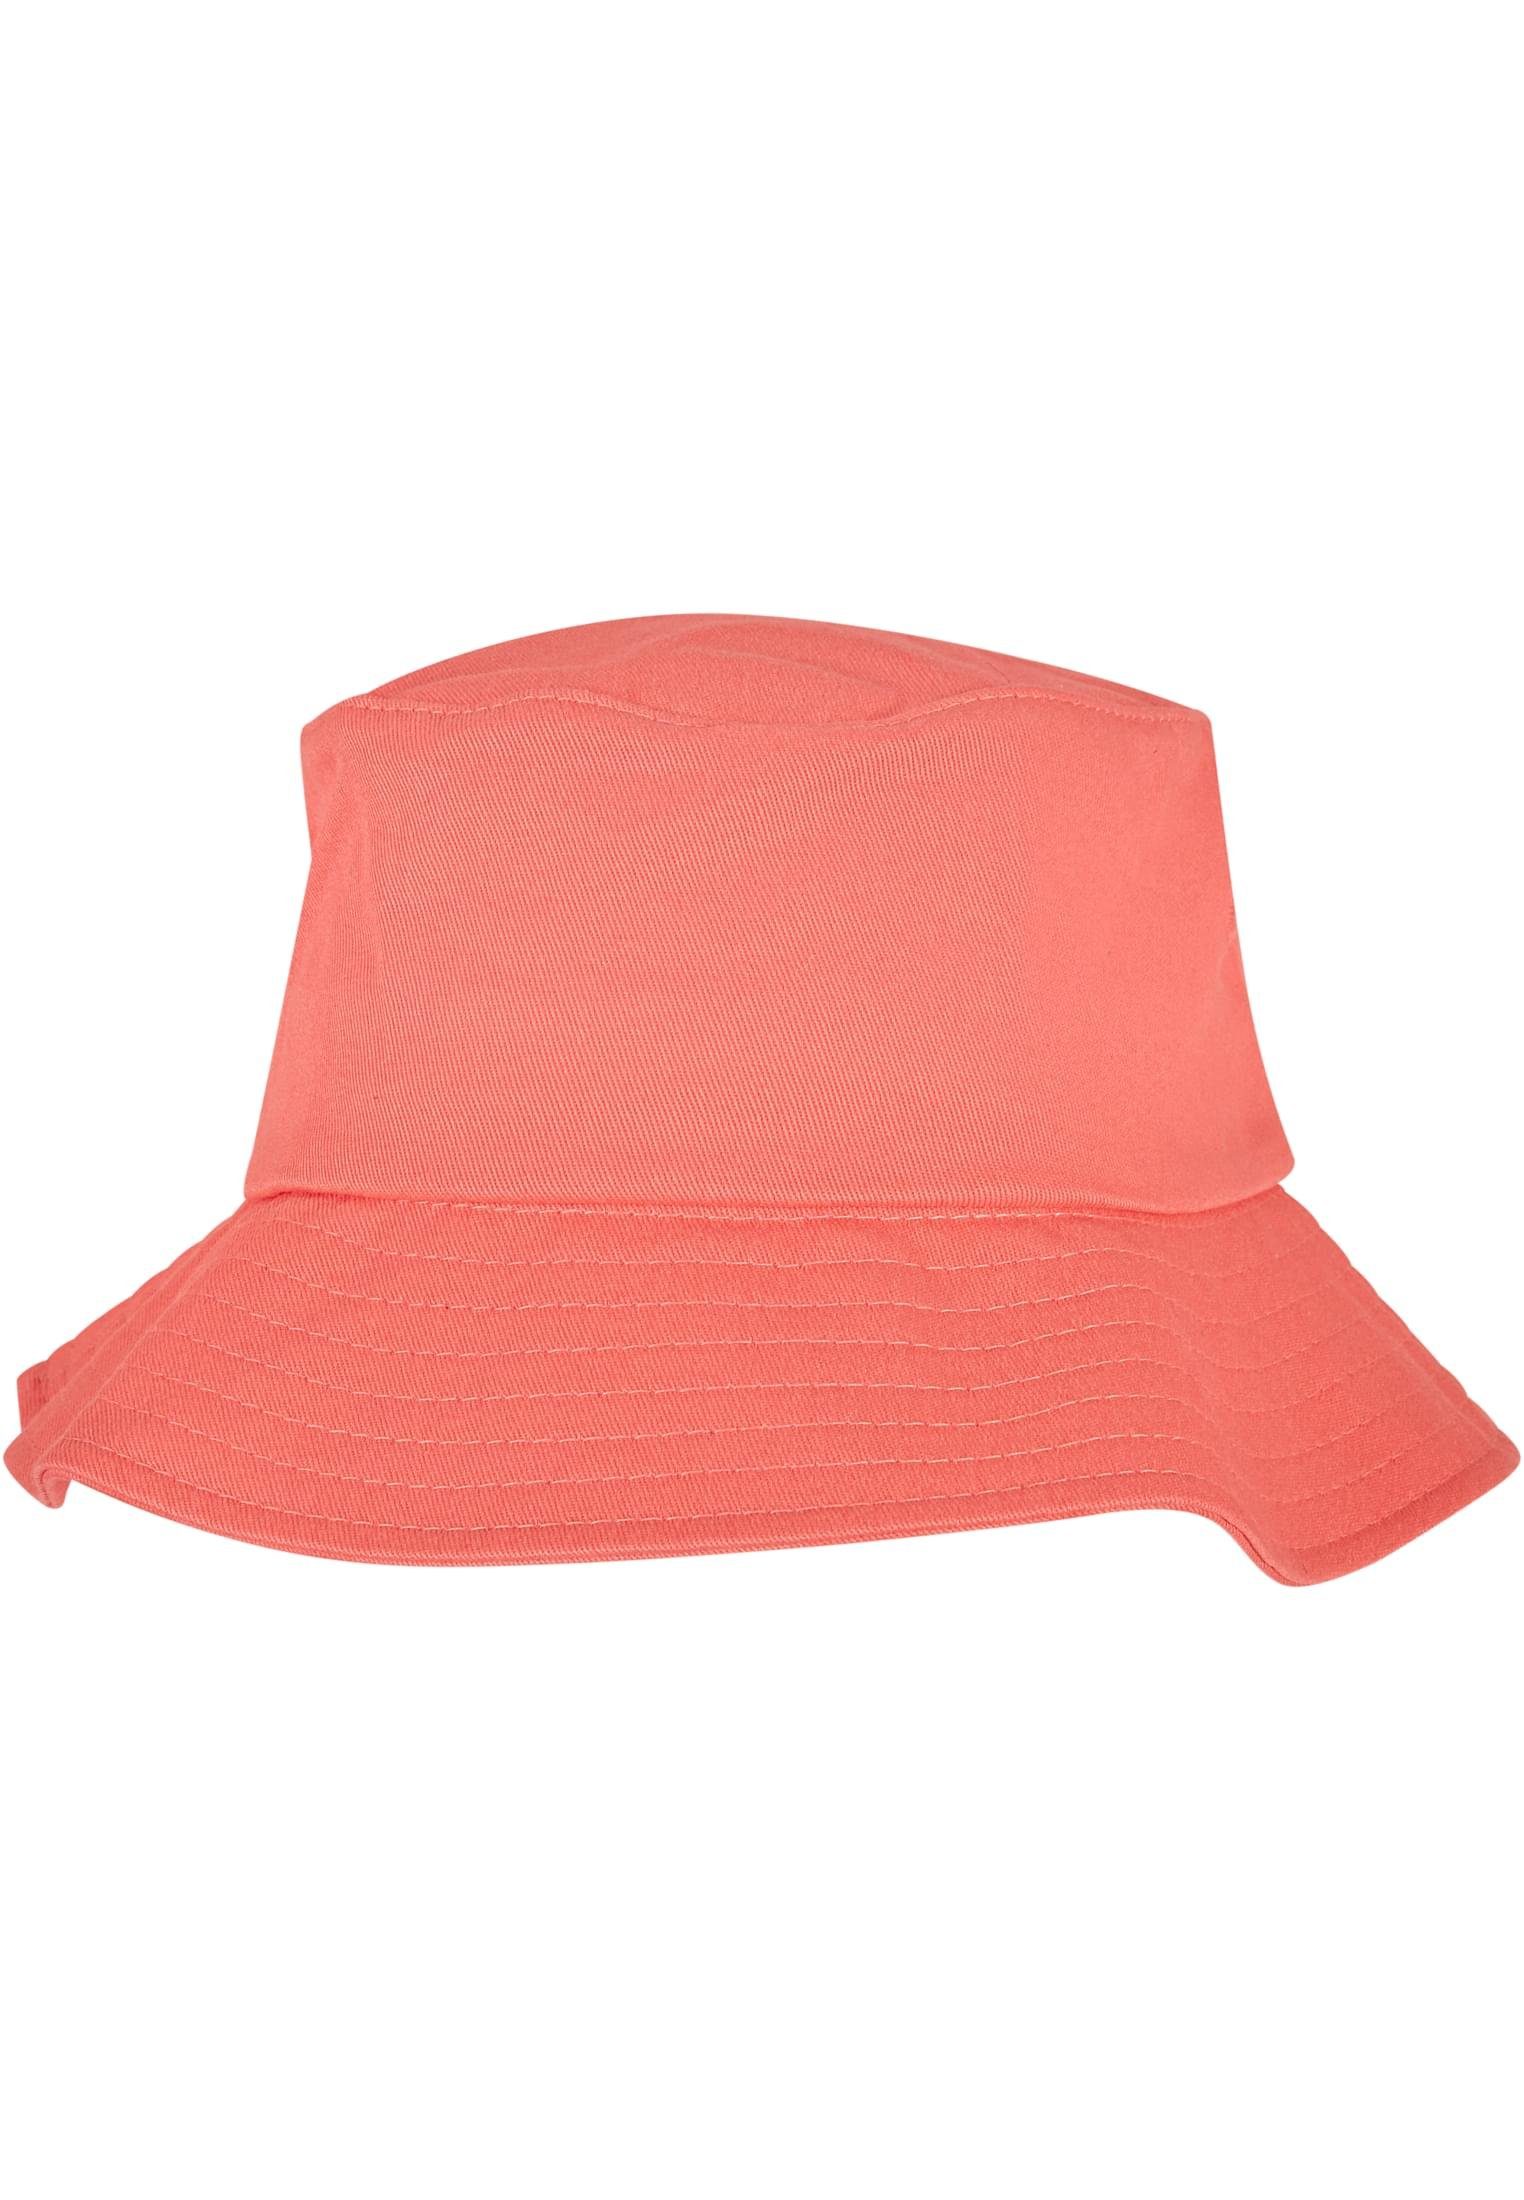 Flex Bucket Flexfit Cotton Hat Twill spicedcoral Cap Accessoires Flexfit